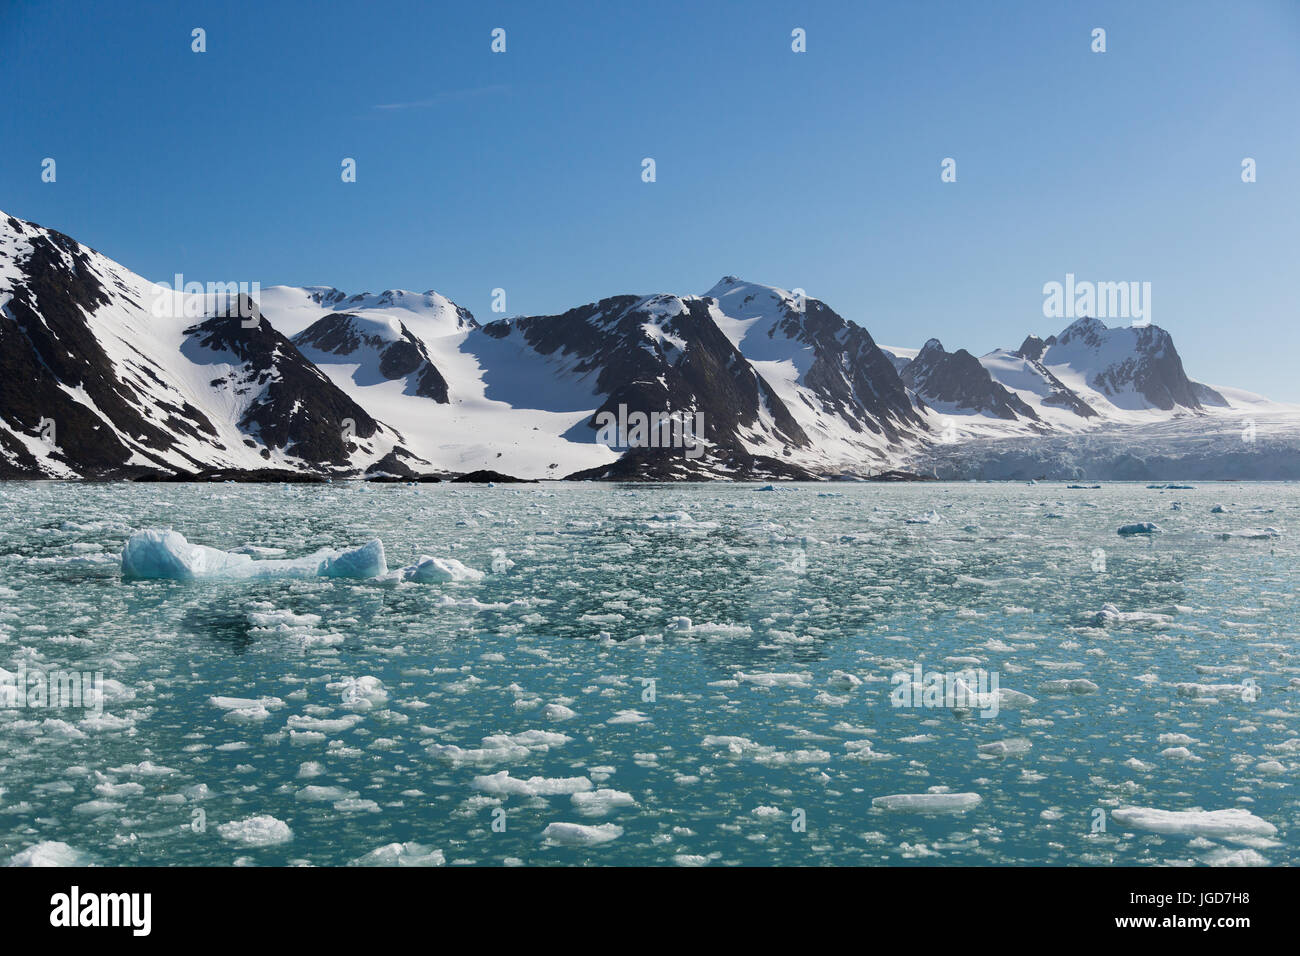 Das sanfte, klare Wasser einer Bucht an der Zunge des Gletschers ist gesprenkelt mit schwebenden Fragmente von Eis aus einer Kalben Veranstaltung. Stockfoto